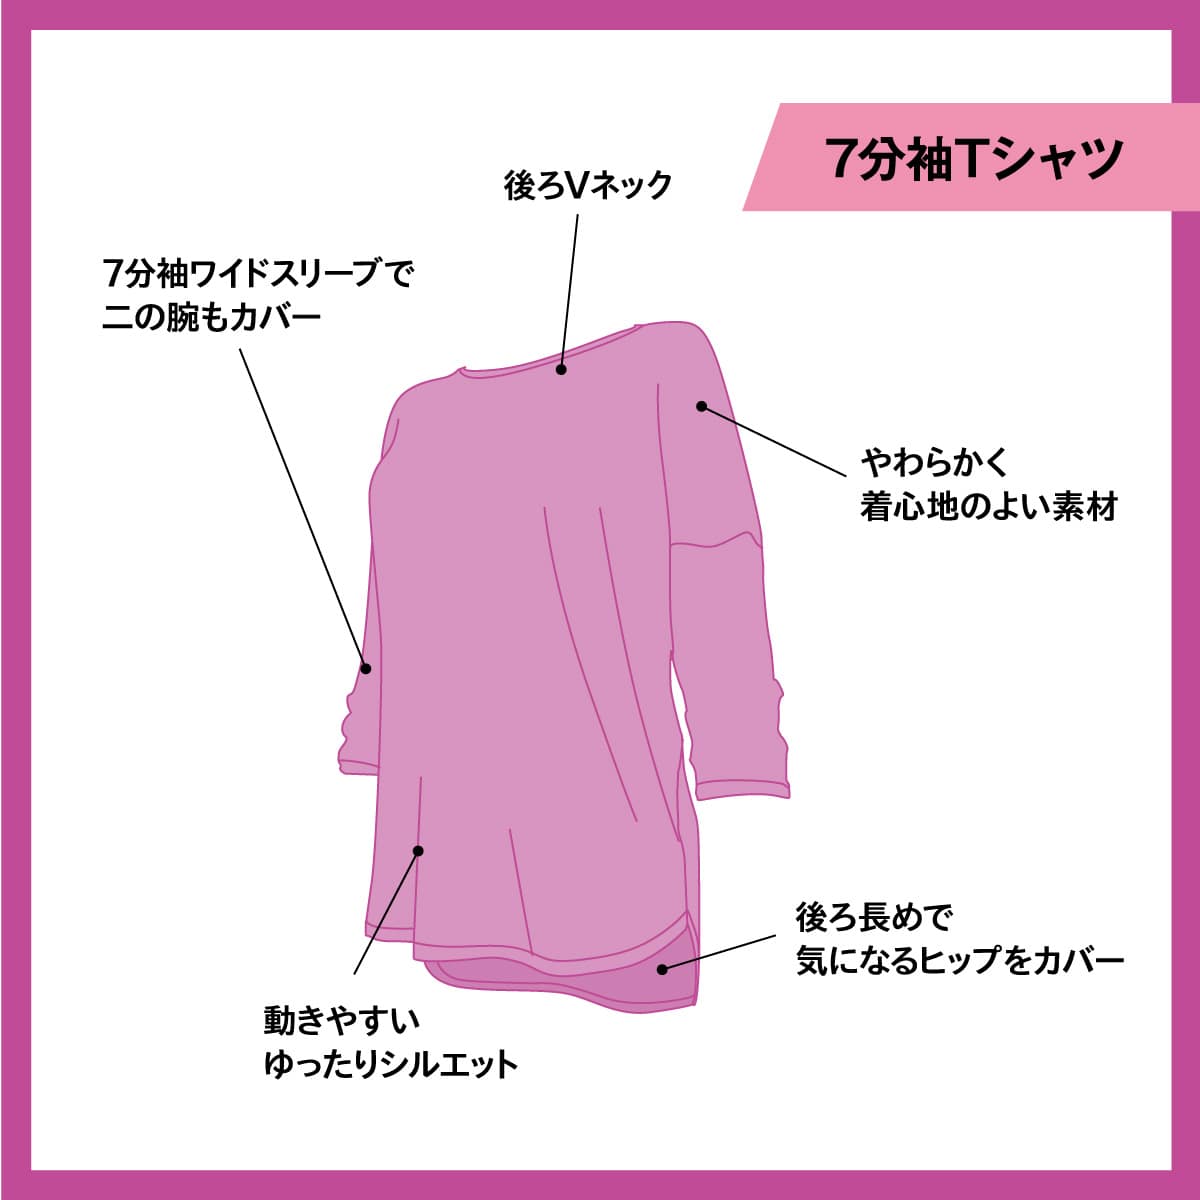 【YOGA】Tシャツ 7分袖